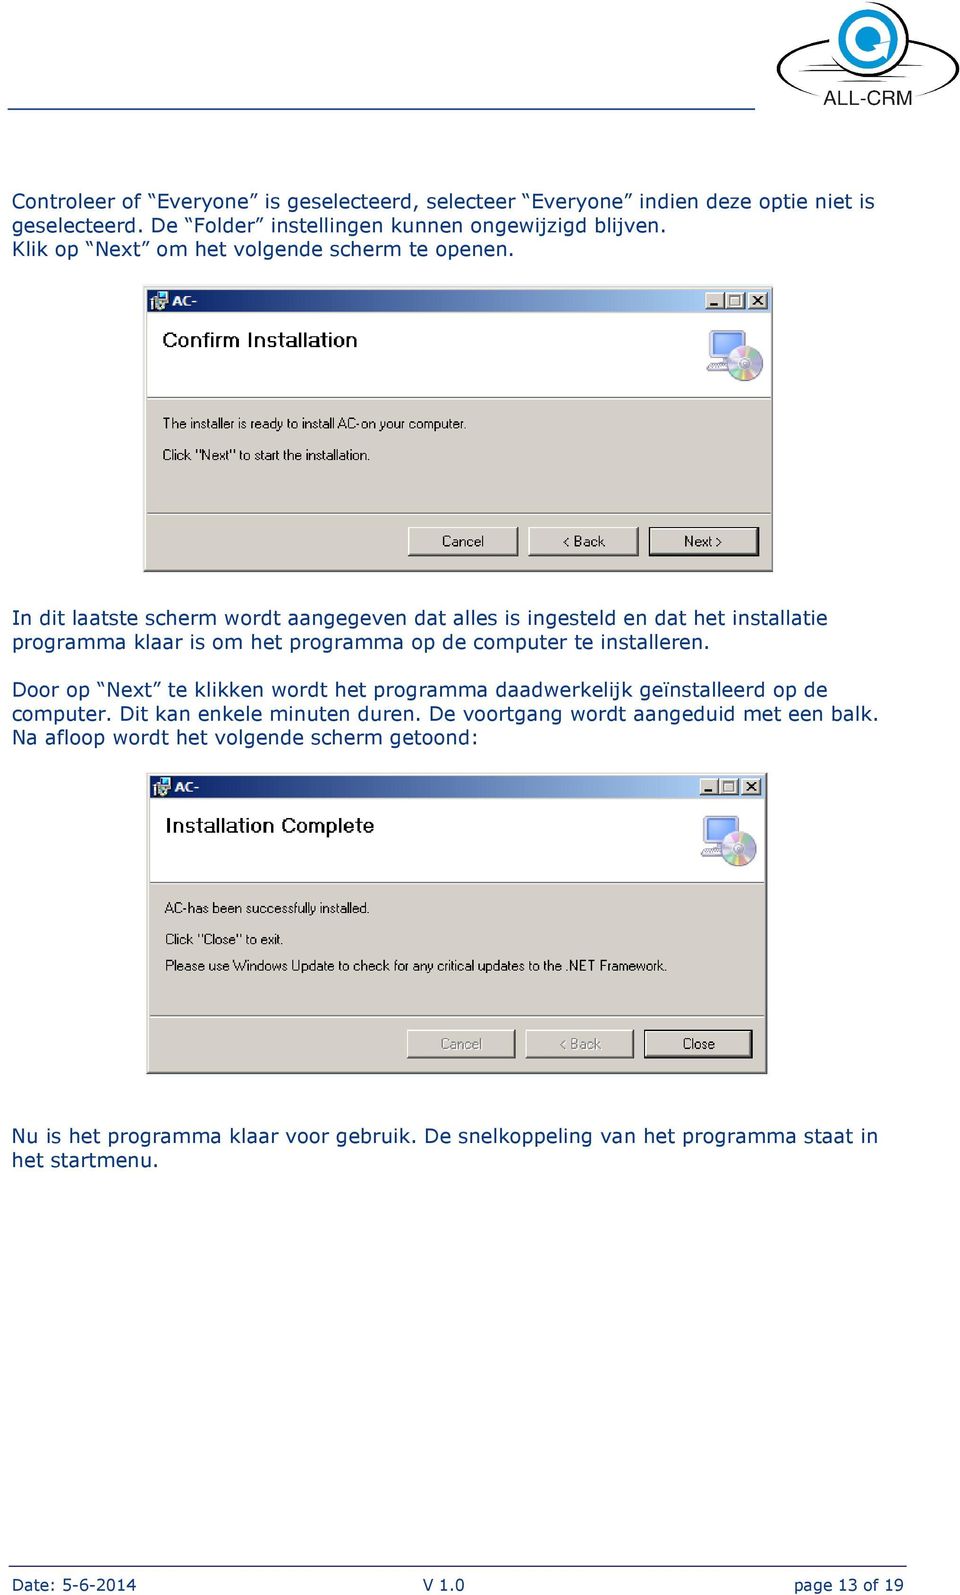 In dit laatste scherm wordt aangegeven dat alles is ingesteld en dat het installatie programma klaar is om het programma op de computer te installeren.